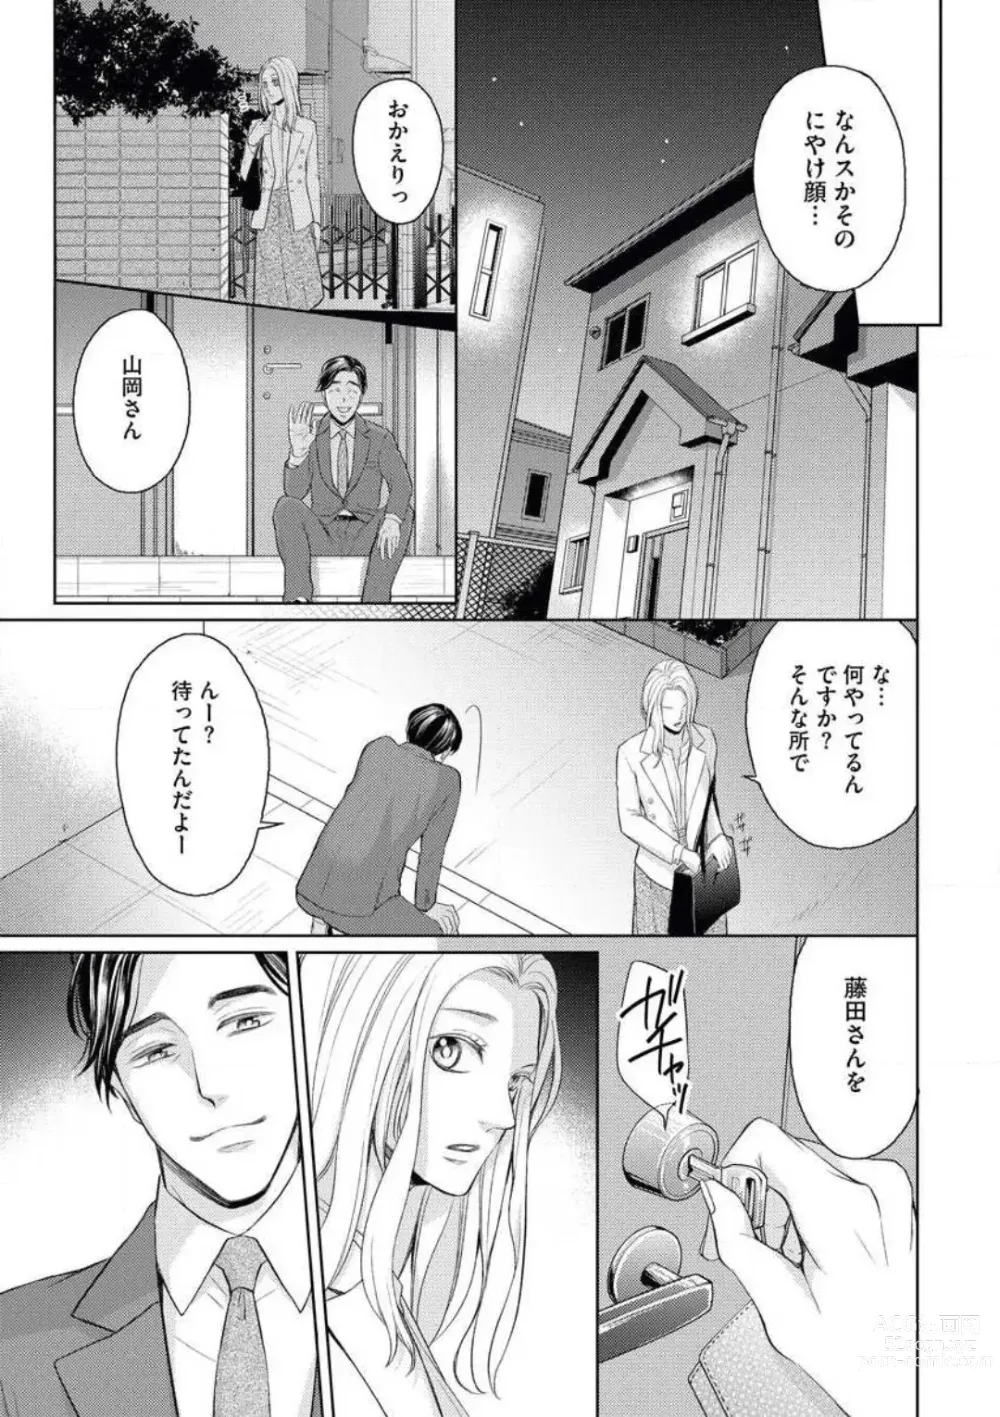 Page 25 of manga Mitsu Koi Maisonette